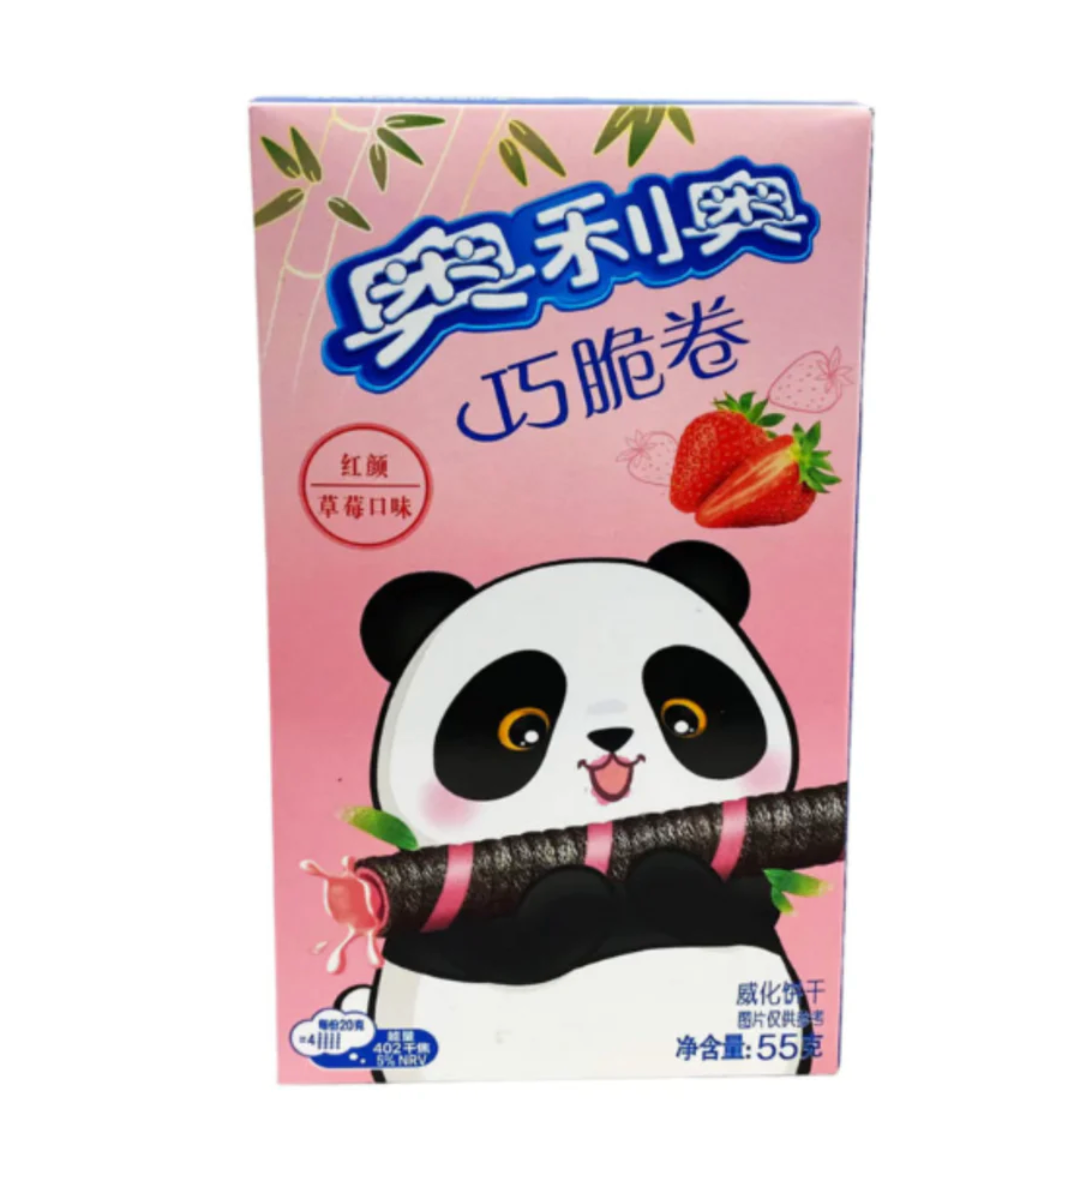 Oreo Wafer Rolls - Strawberry (Panda)